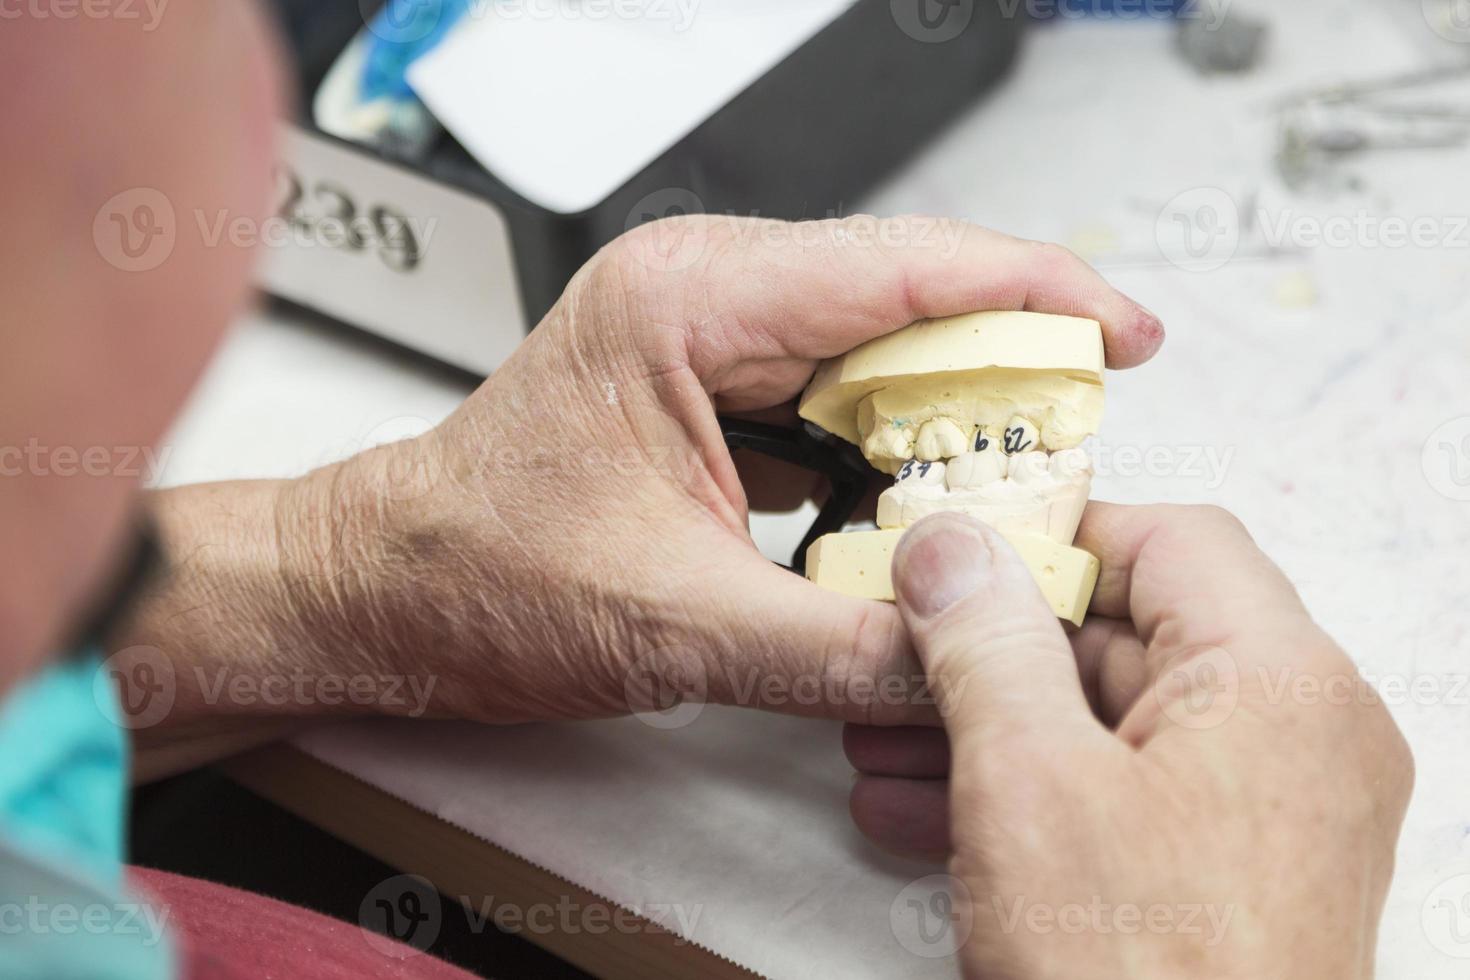 técnico dentário trabalhando em molde impresso em 3D para implantes dentários foto